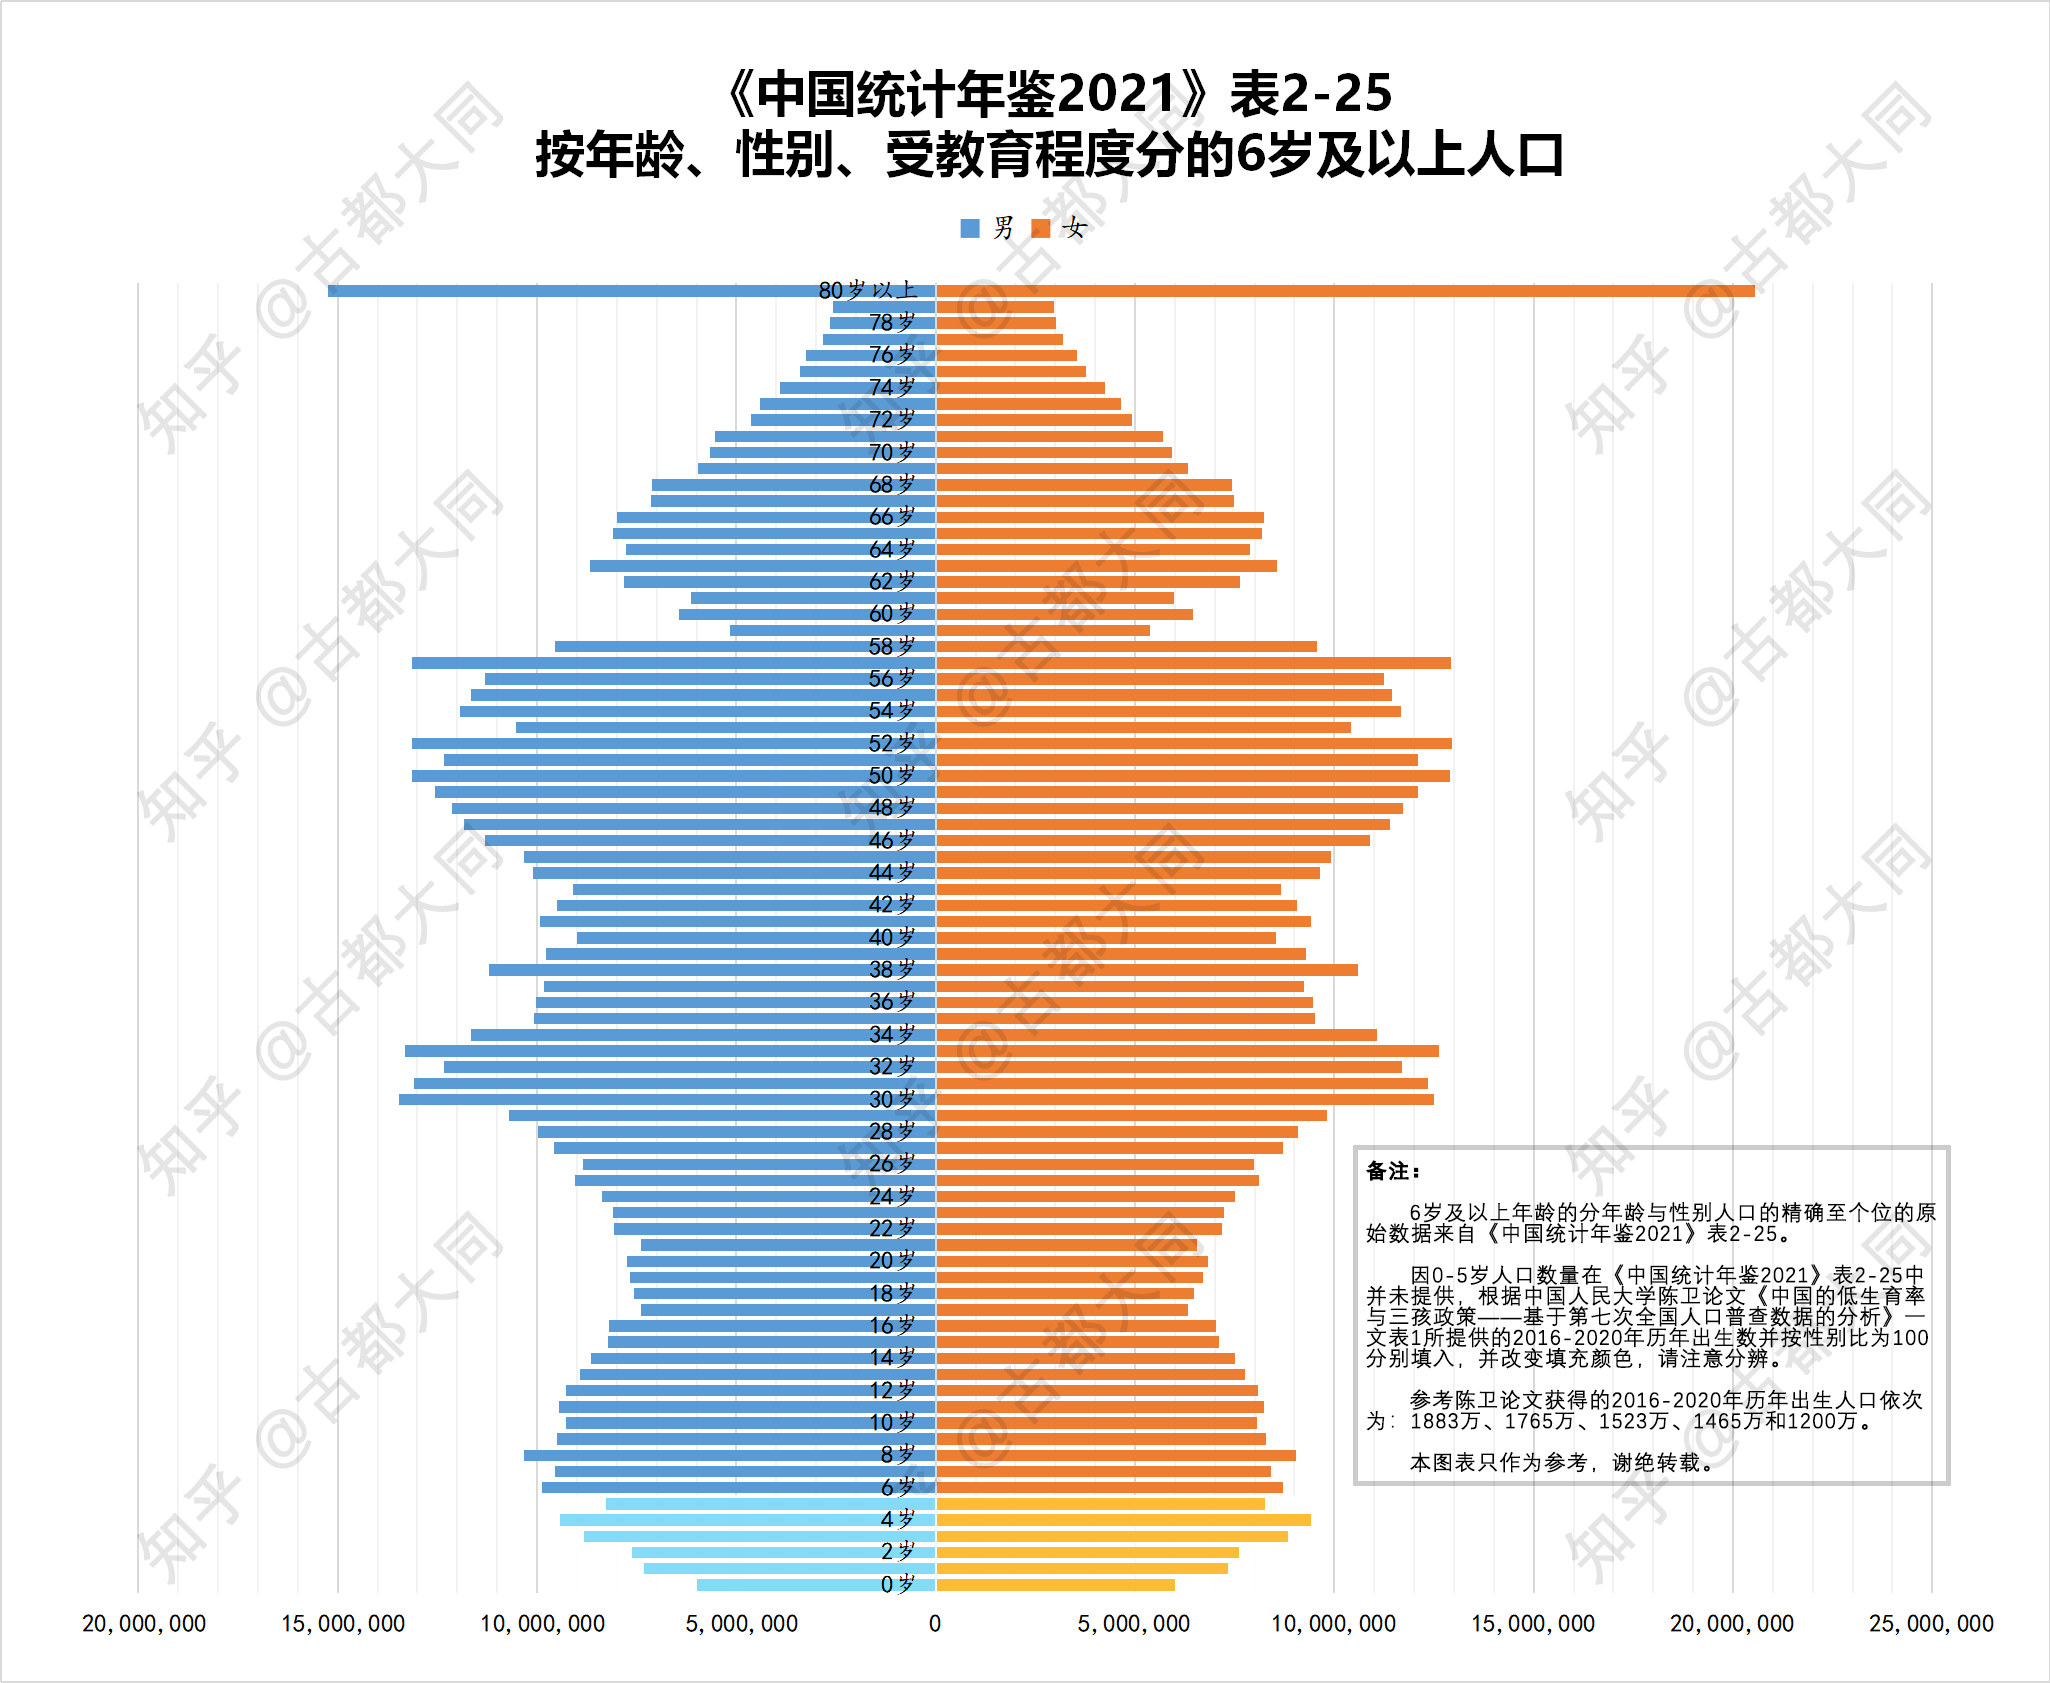 中国人口年龄分布2021图片